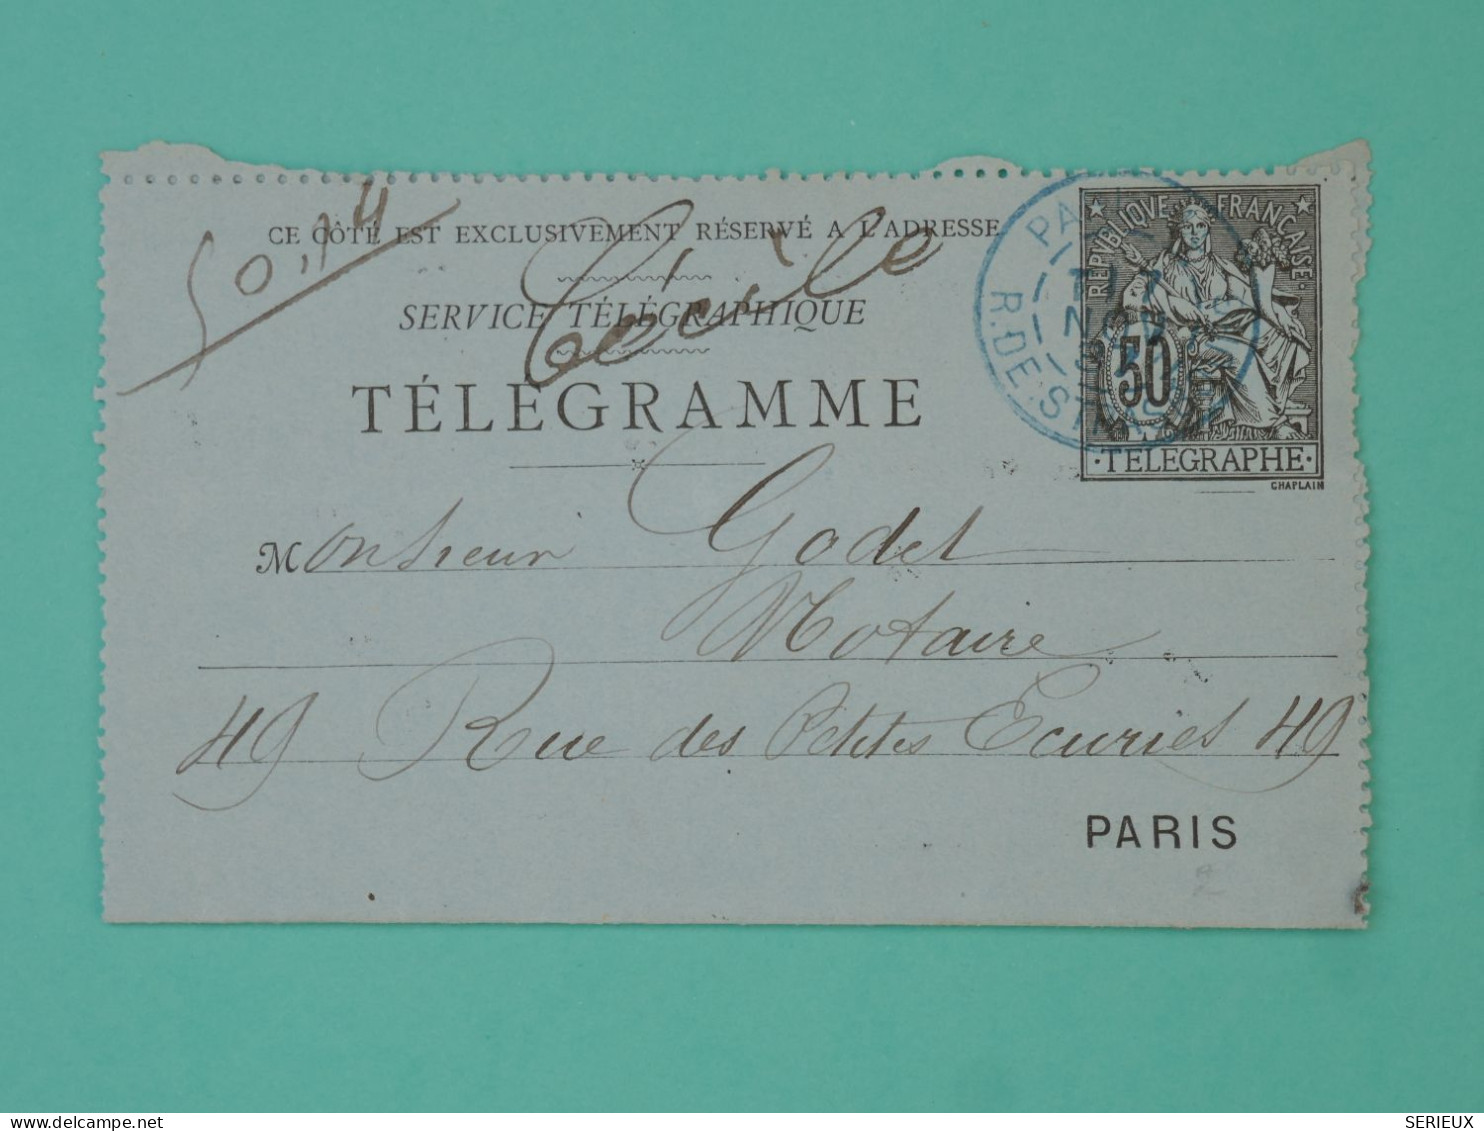 DB22 FRANCE   BELLE CARTE TELEGRAMME   1891 PARIS + AFFR. BLEU NTERESSANT++ - Pneumatic Post